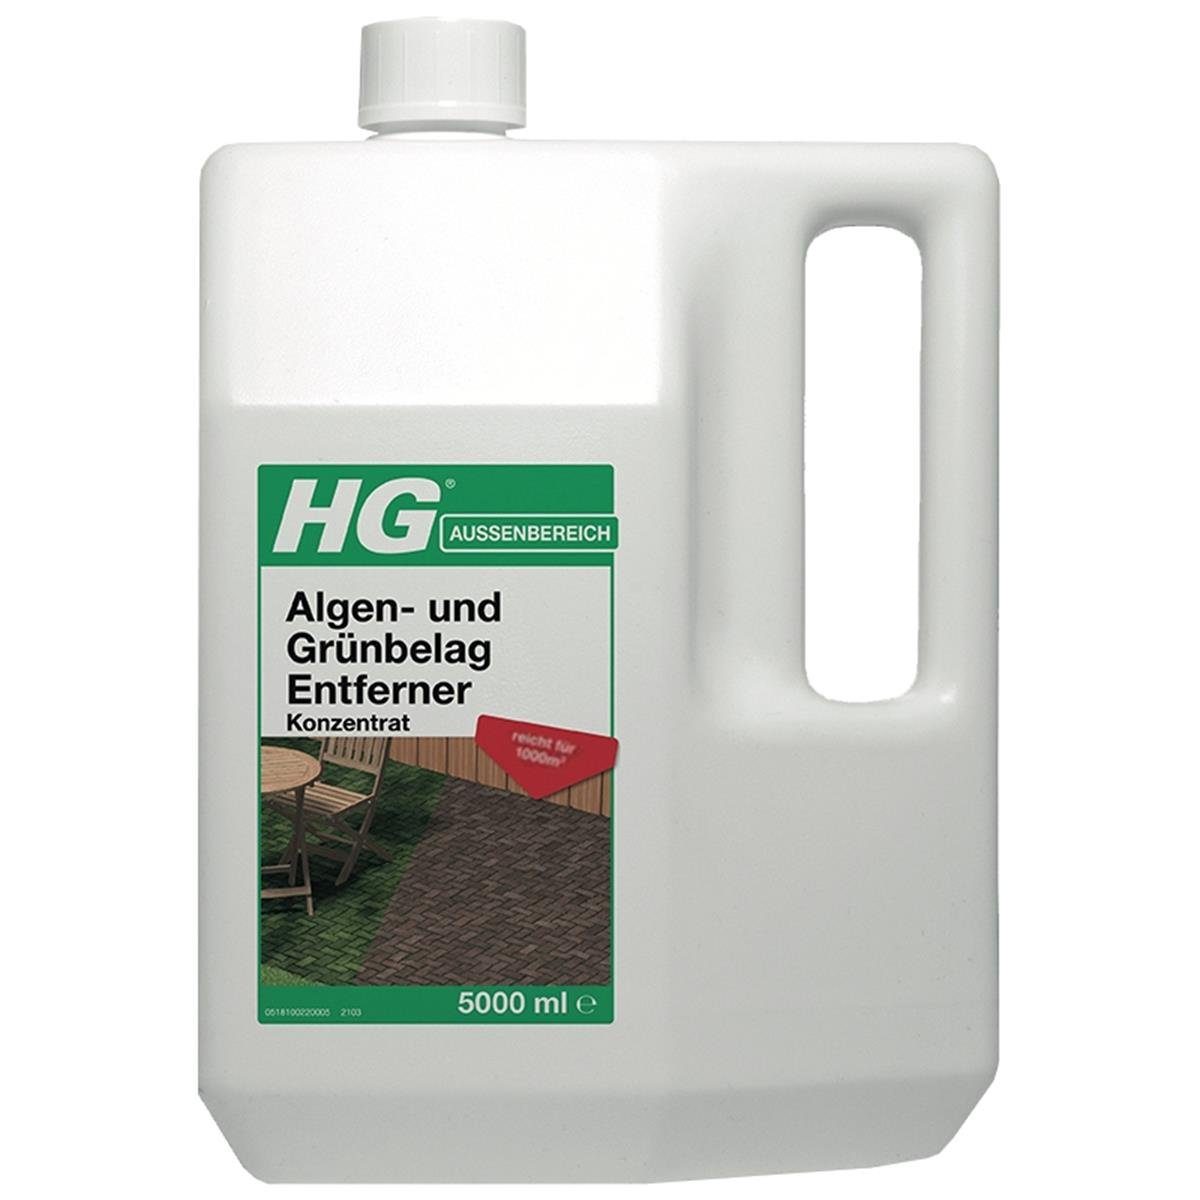 HG HG Algen- und Grünbelag Entferner Konzentrat 5L (1er Pack) Spezialwaschmittel